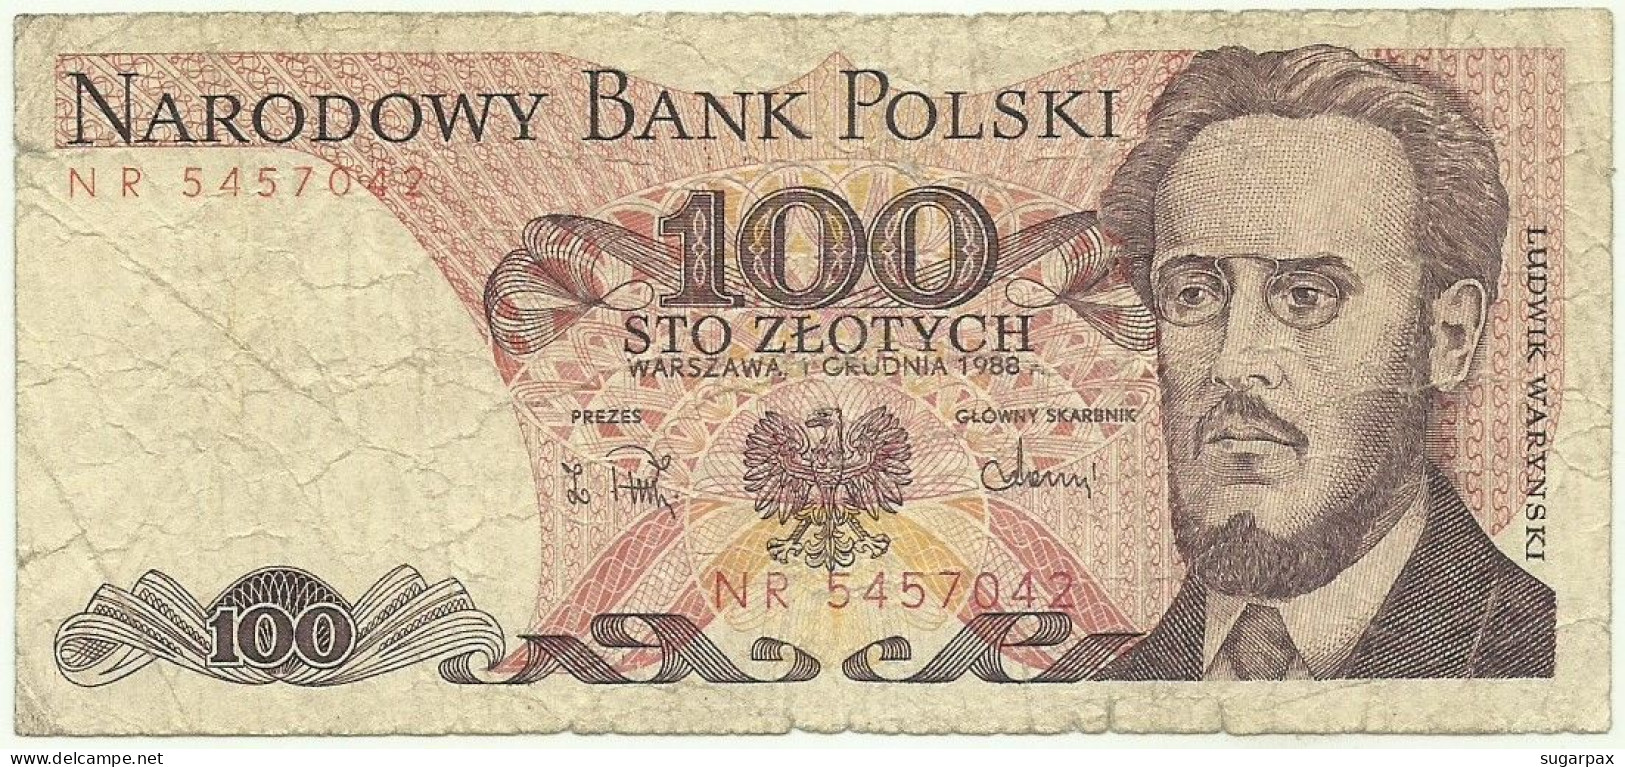 POLAND - 100 Zlotych - 1988 - Pick 143.e - Série NR - Narodowy Bank Polski - Polonia